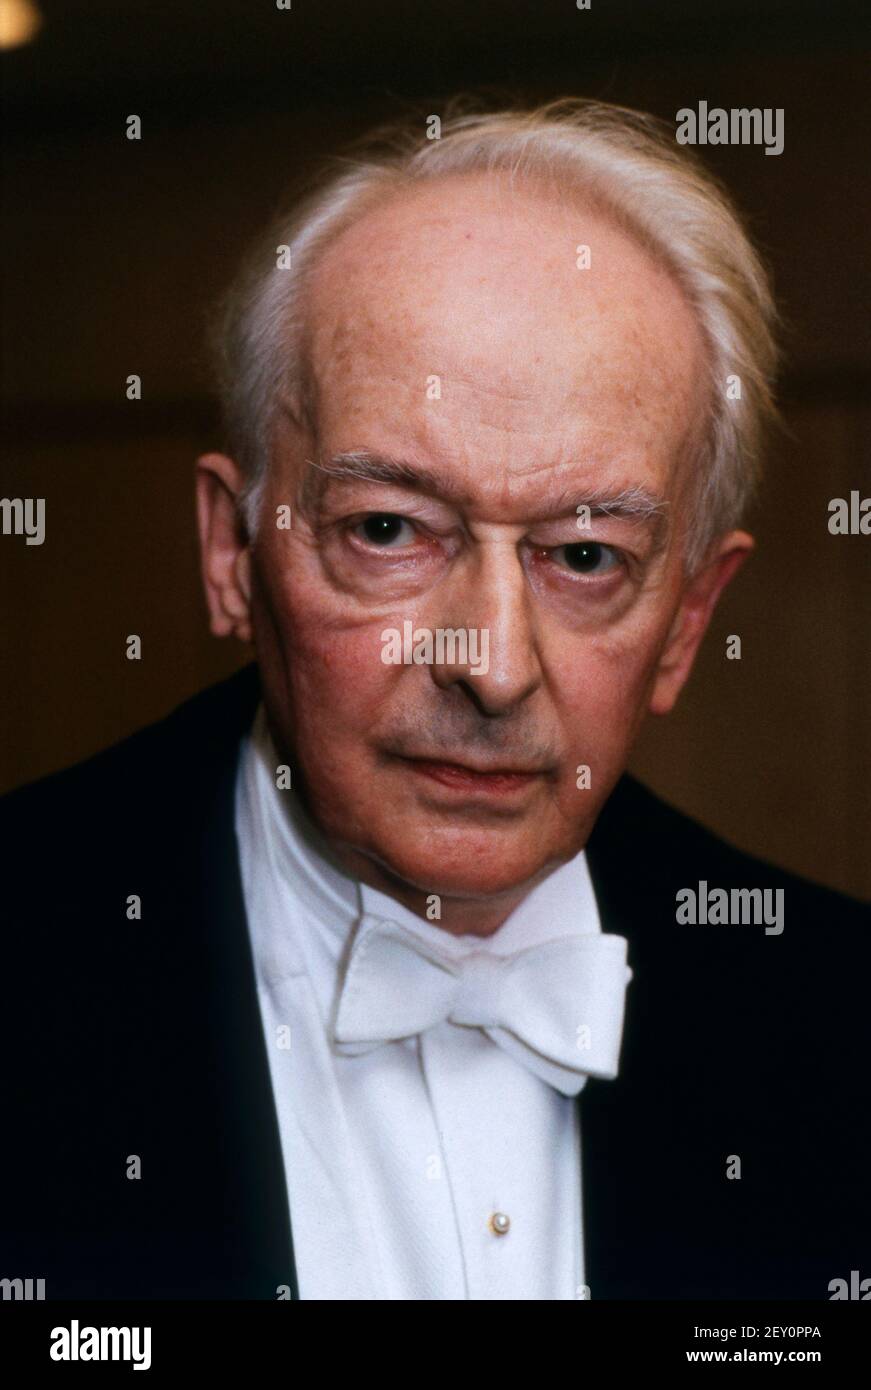 Günter Wand, deutscher Dirigent, Portrait circa 1987. Guenter Wand, German conductor, portrait circa 1987. Stock Photo